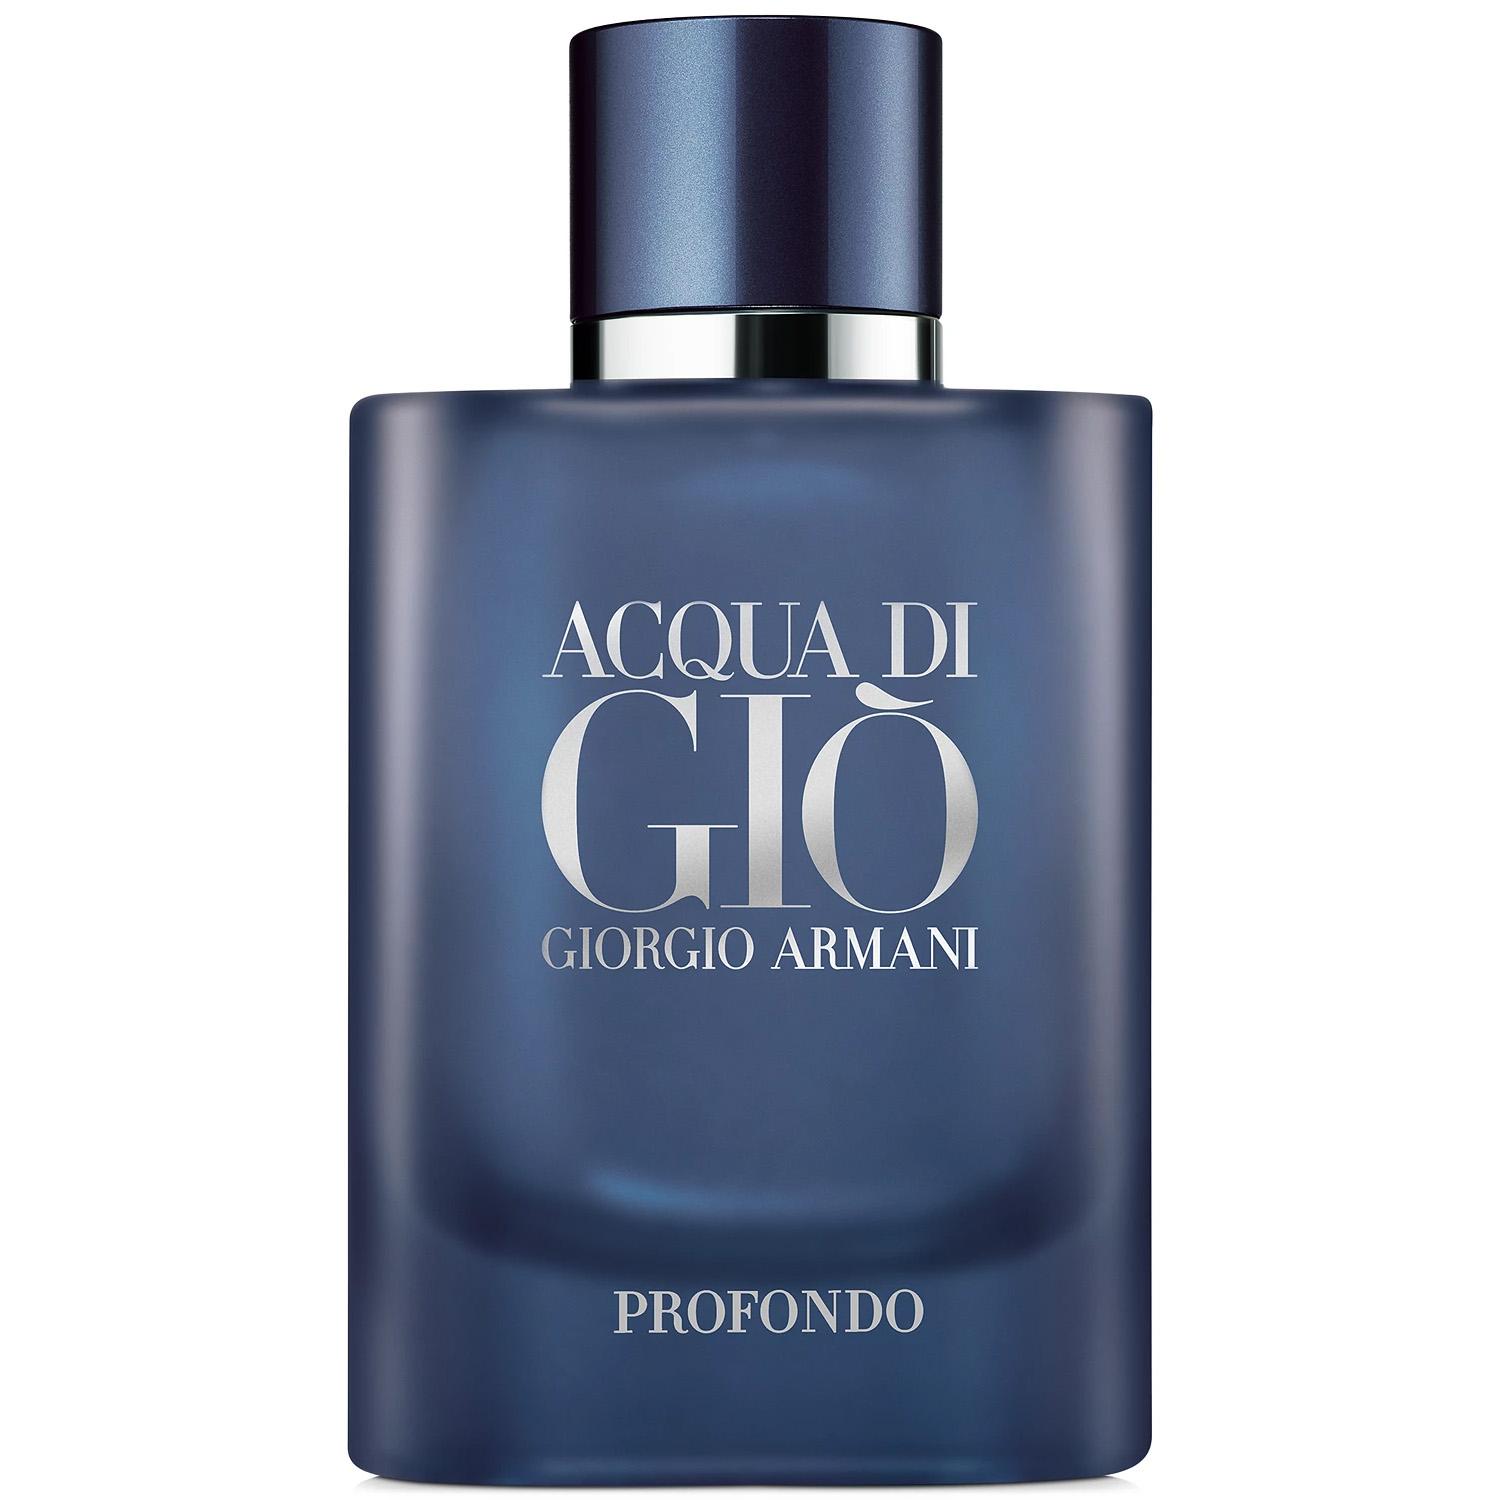 Giorgio Armani Acqua di Gio Profondo Mens Spray Cologne for $51 Shipped